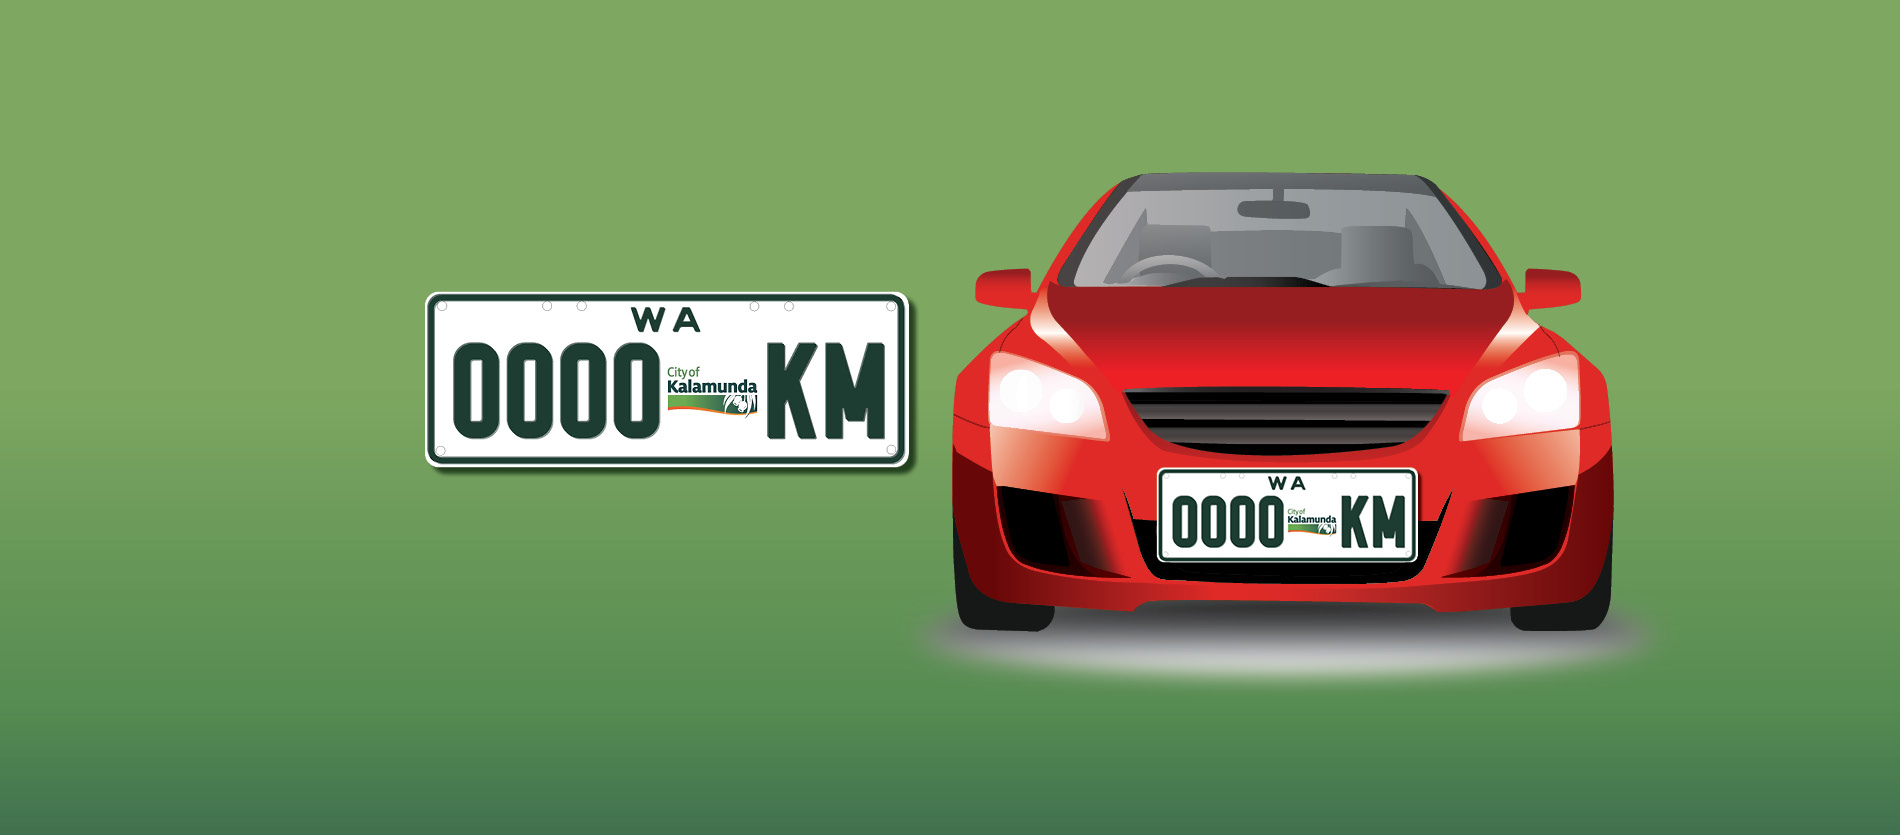 Illustration of customised City of Kalamunda Car Number plates